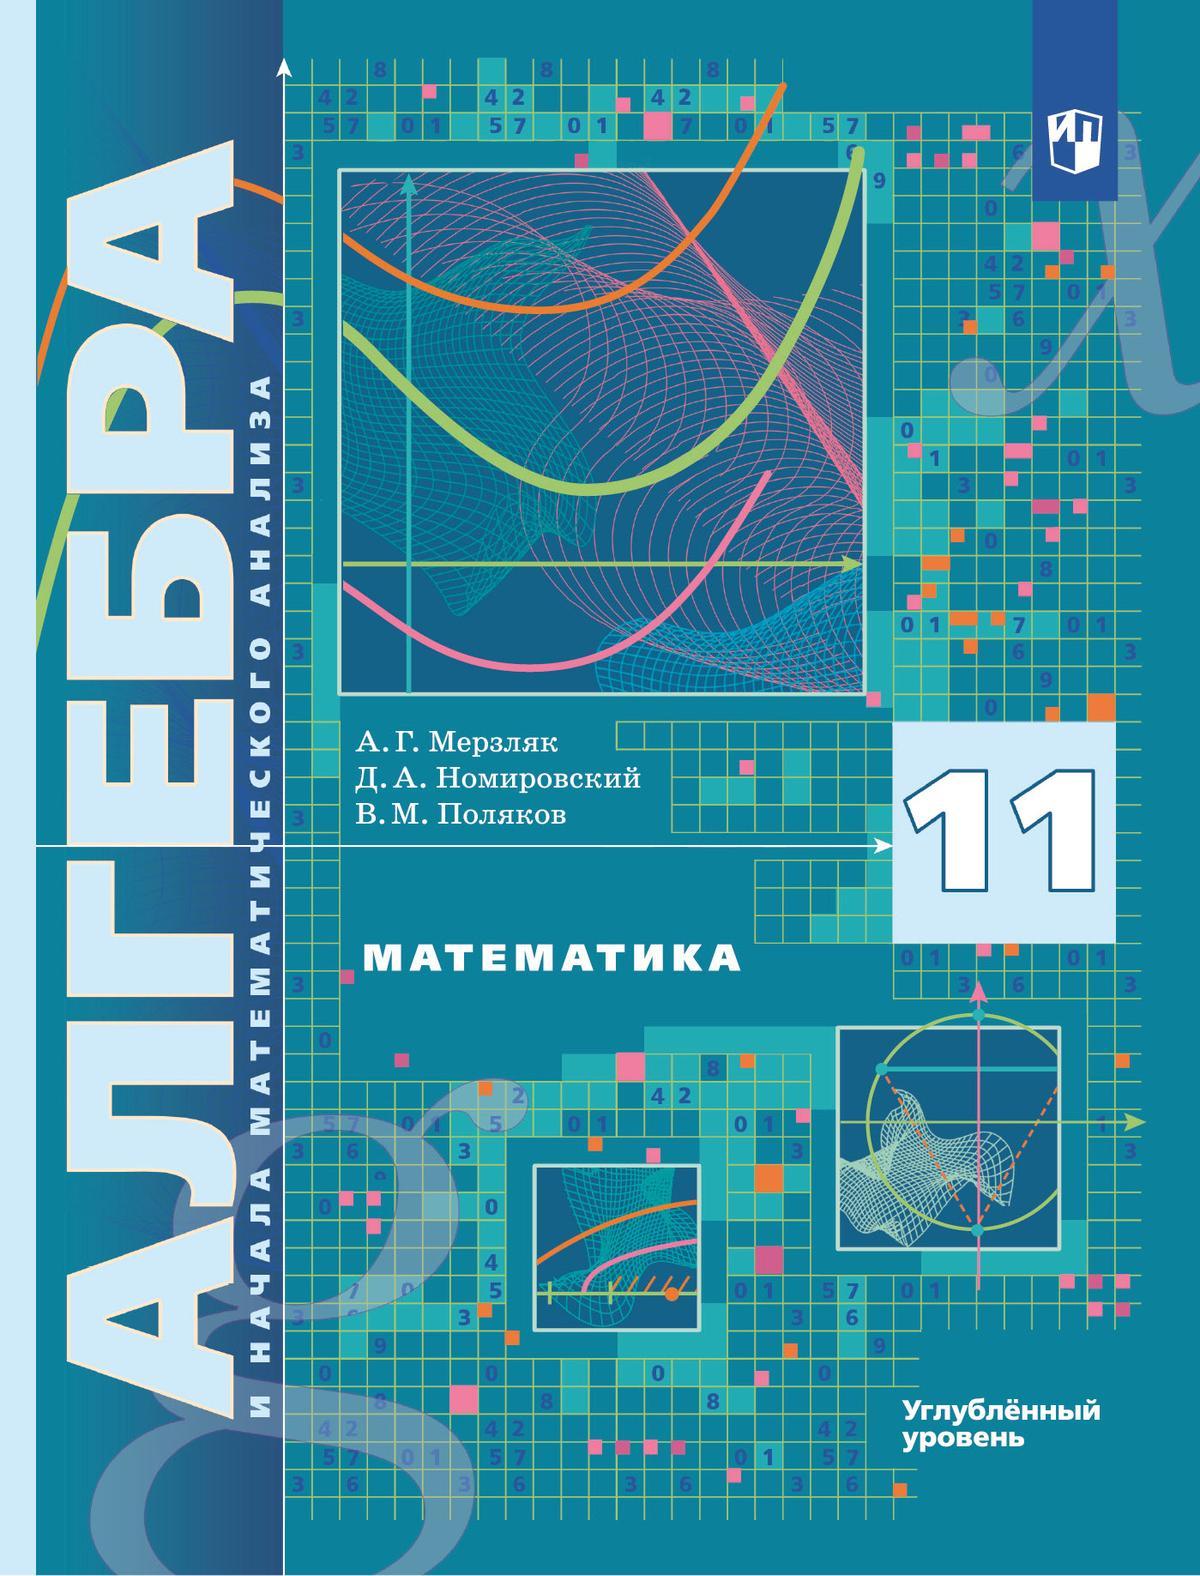 Алгебра и начала математического анализа. 11 класс. Учебник. Углублённый уровень 1